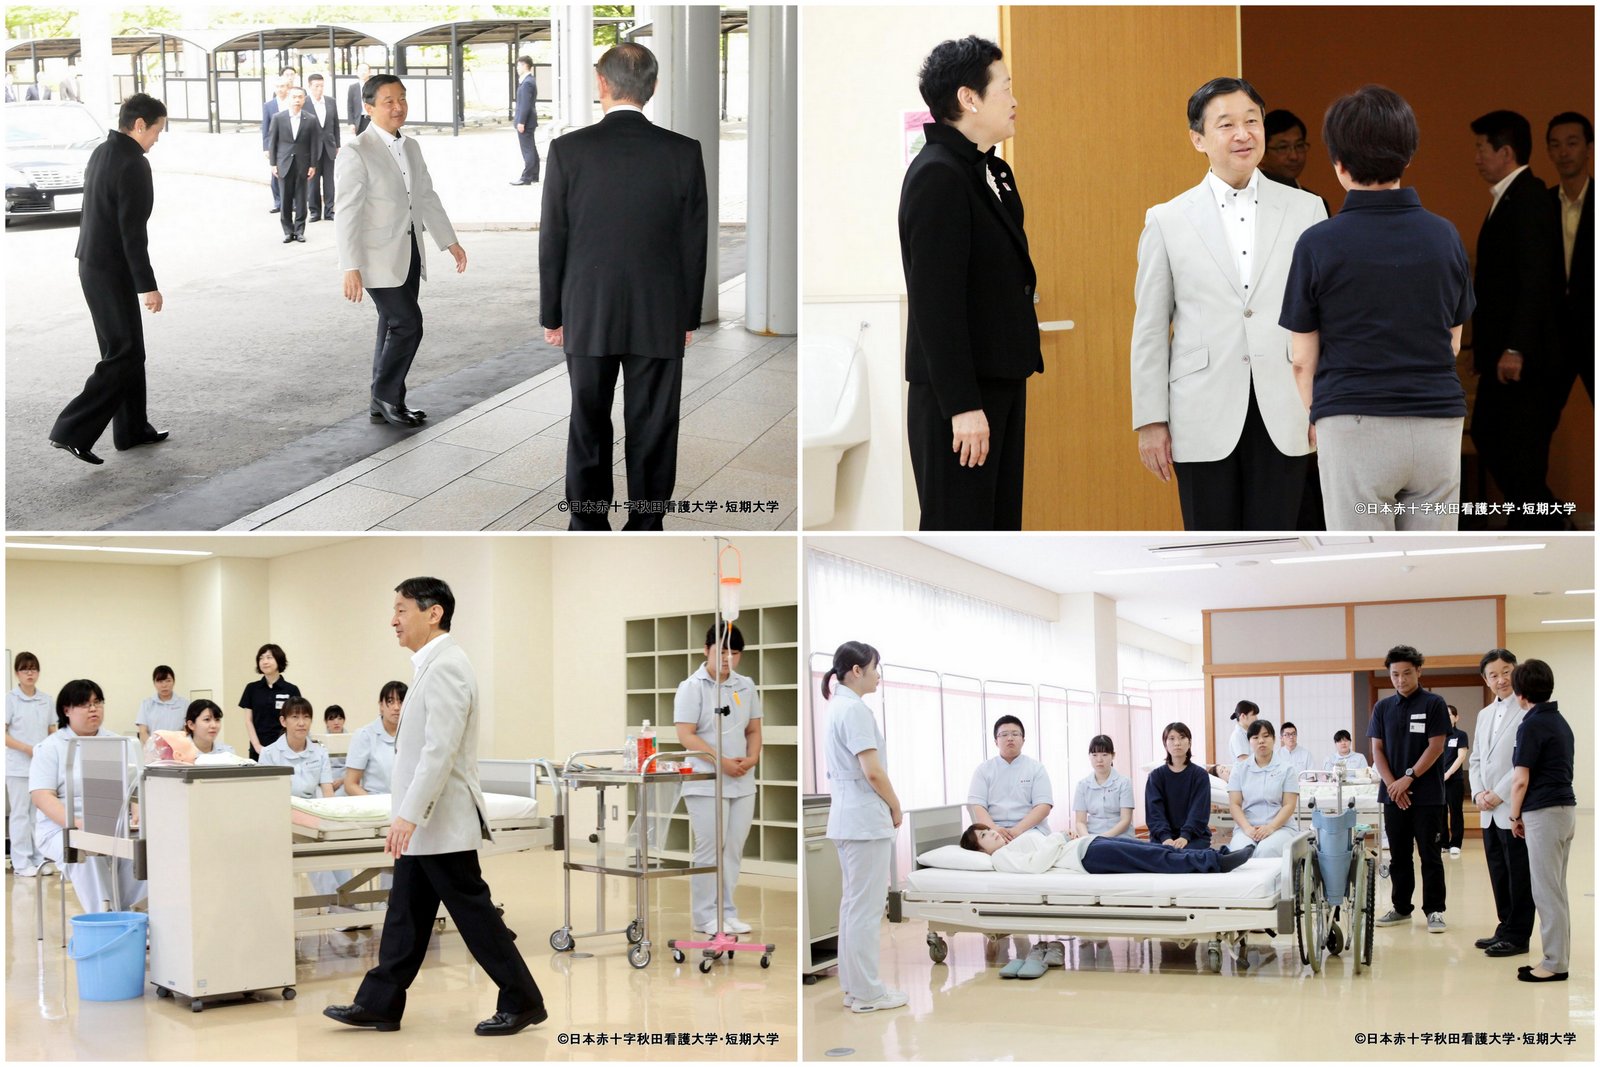 皇太子さまが本学をご訪問されました 17 7 12 日本赤十字秋田看護大学 日本赤十字秋田短期大学